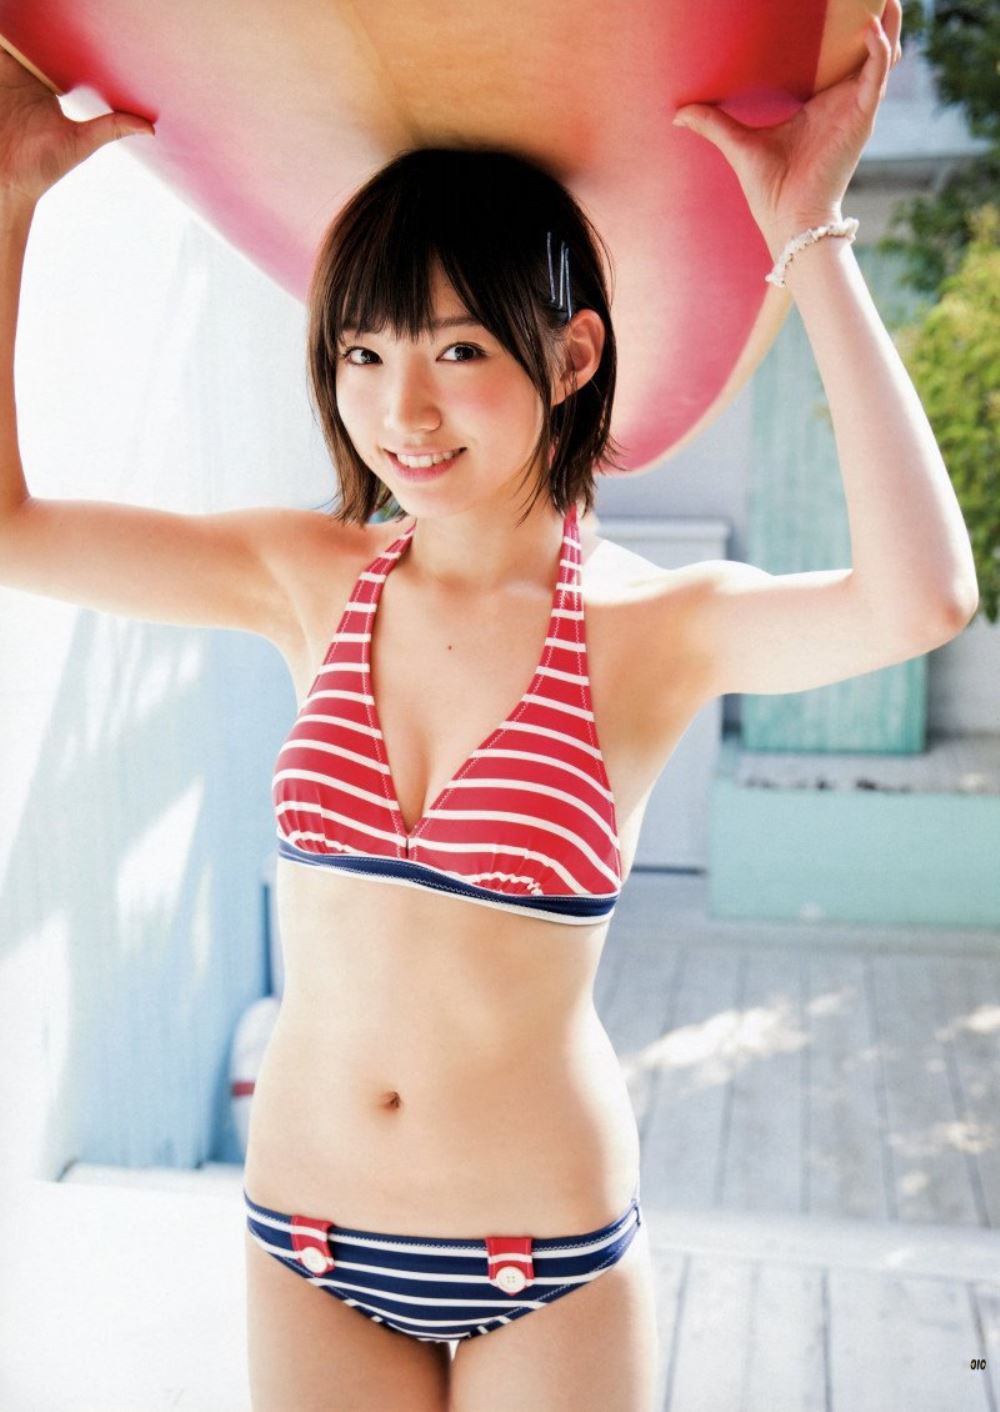 太田夢莉 1万年に1人 可愛い アイドル 水着 画像 83